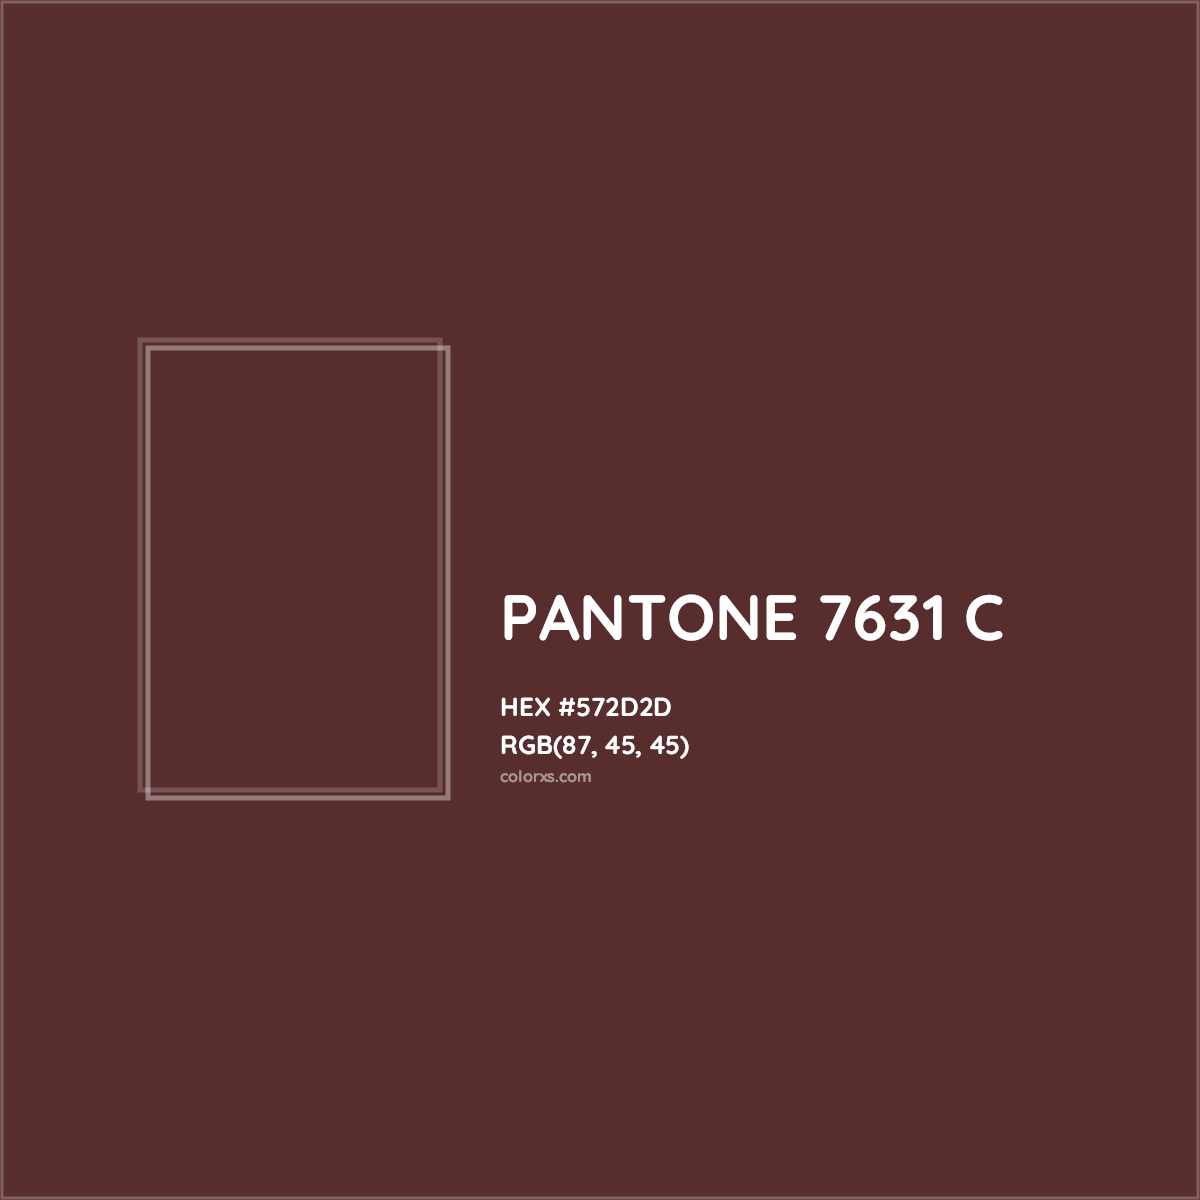 HEX #572D2D PANTONE 7631 C CMS Pantone PMS - Color Code